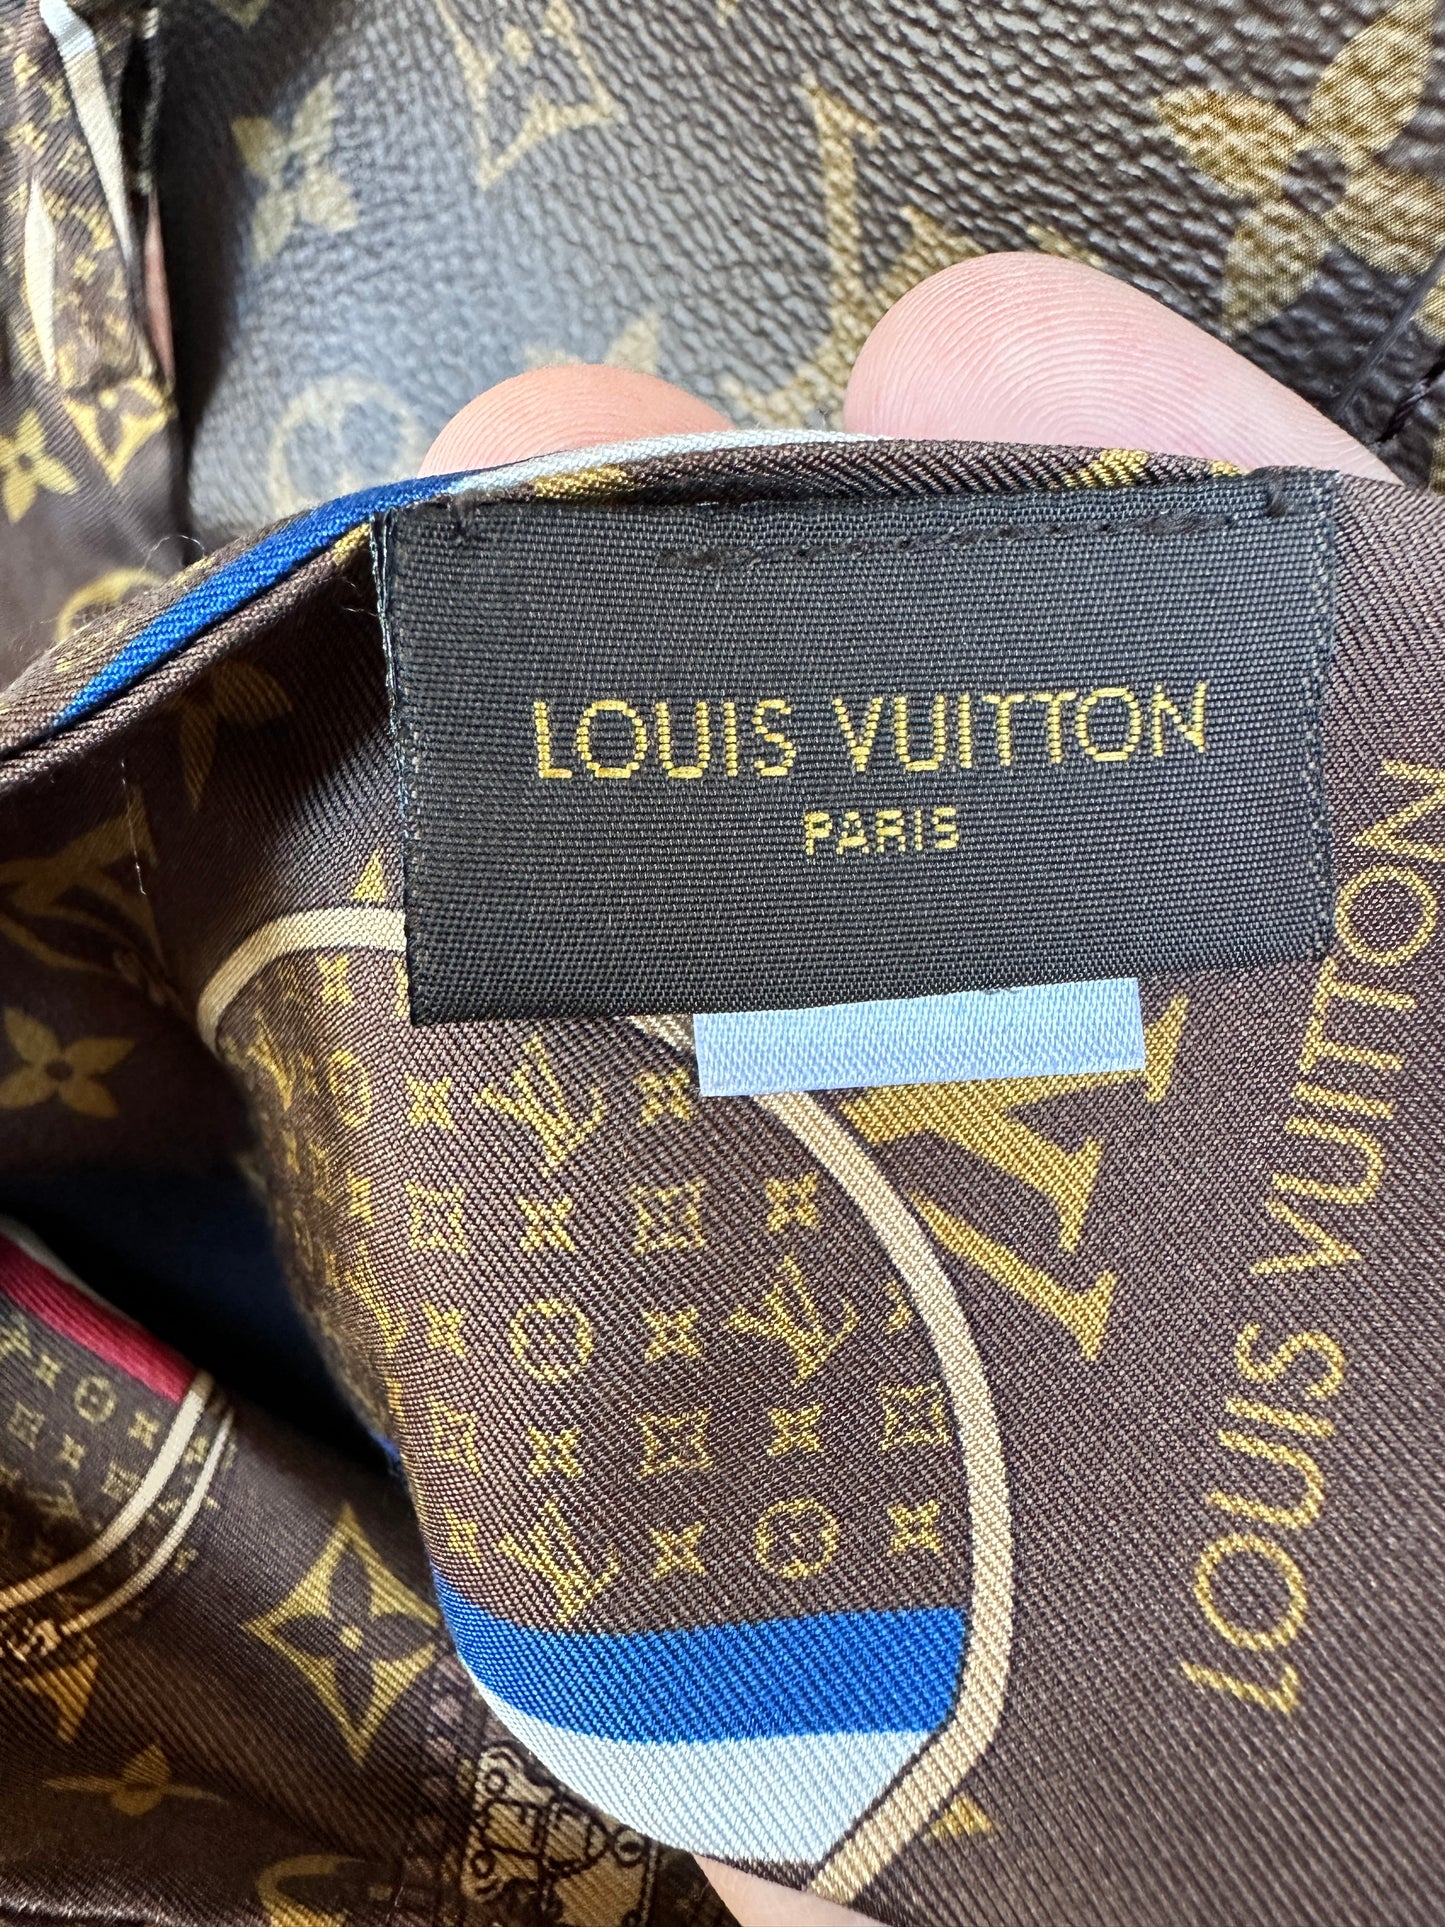 Louis Vuitton Melie Handbag Monogram Canvas